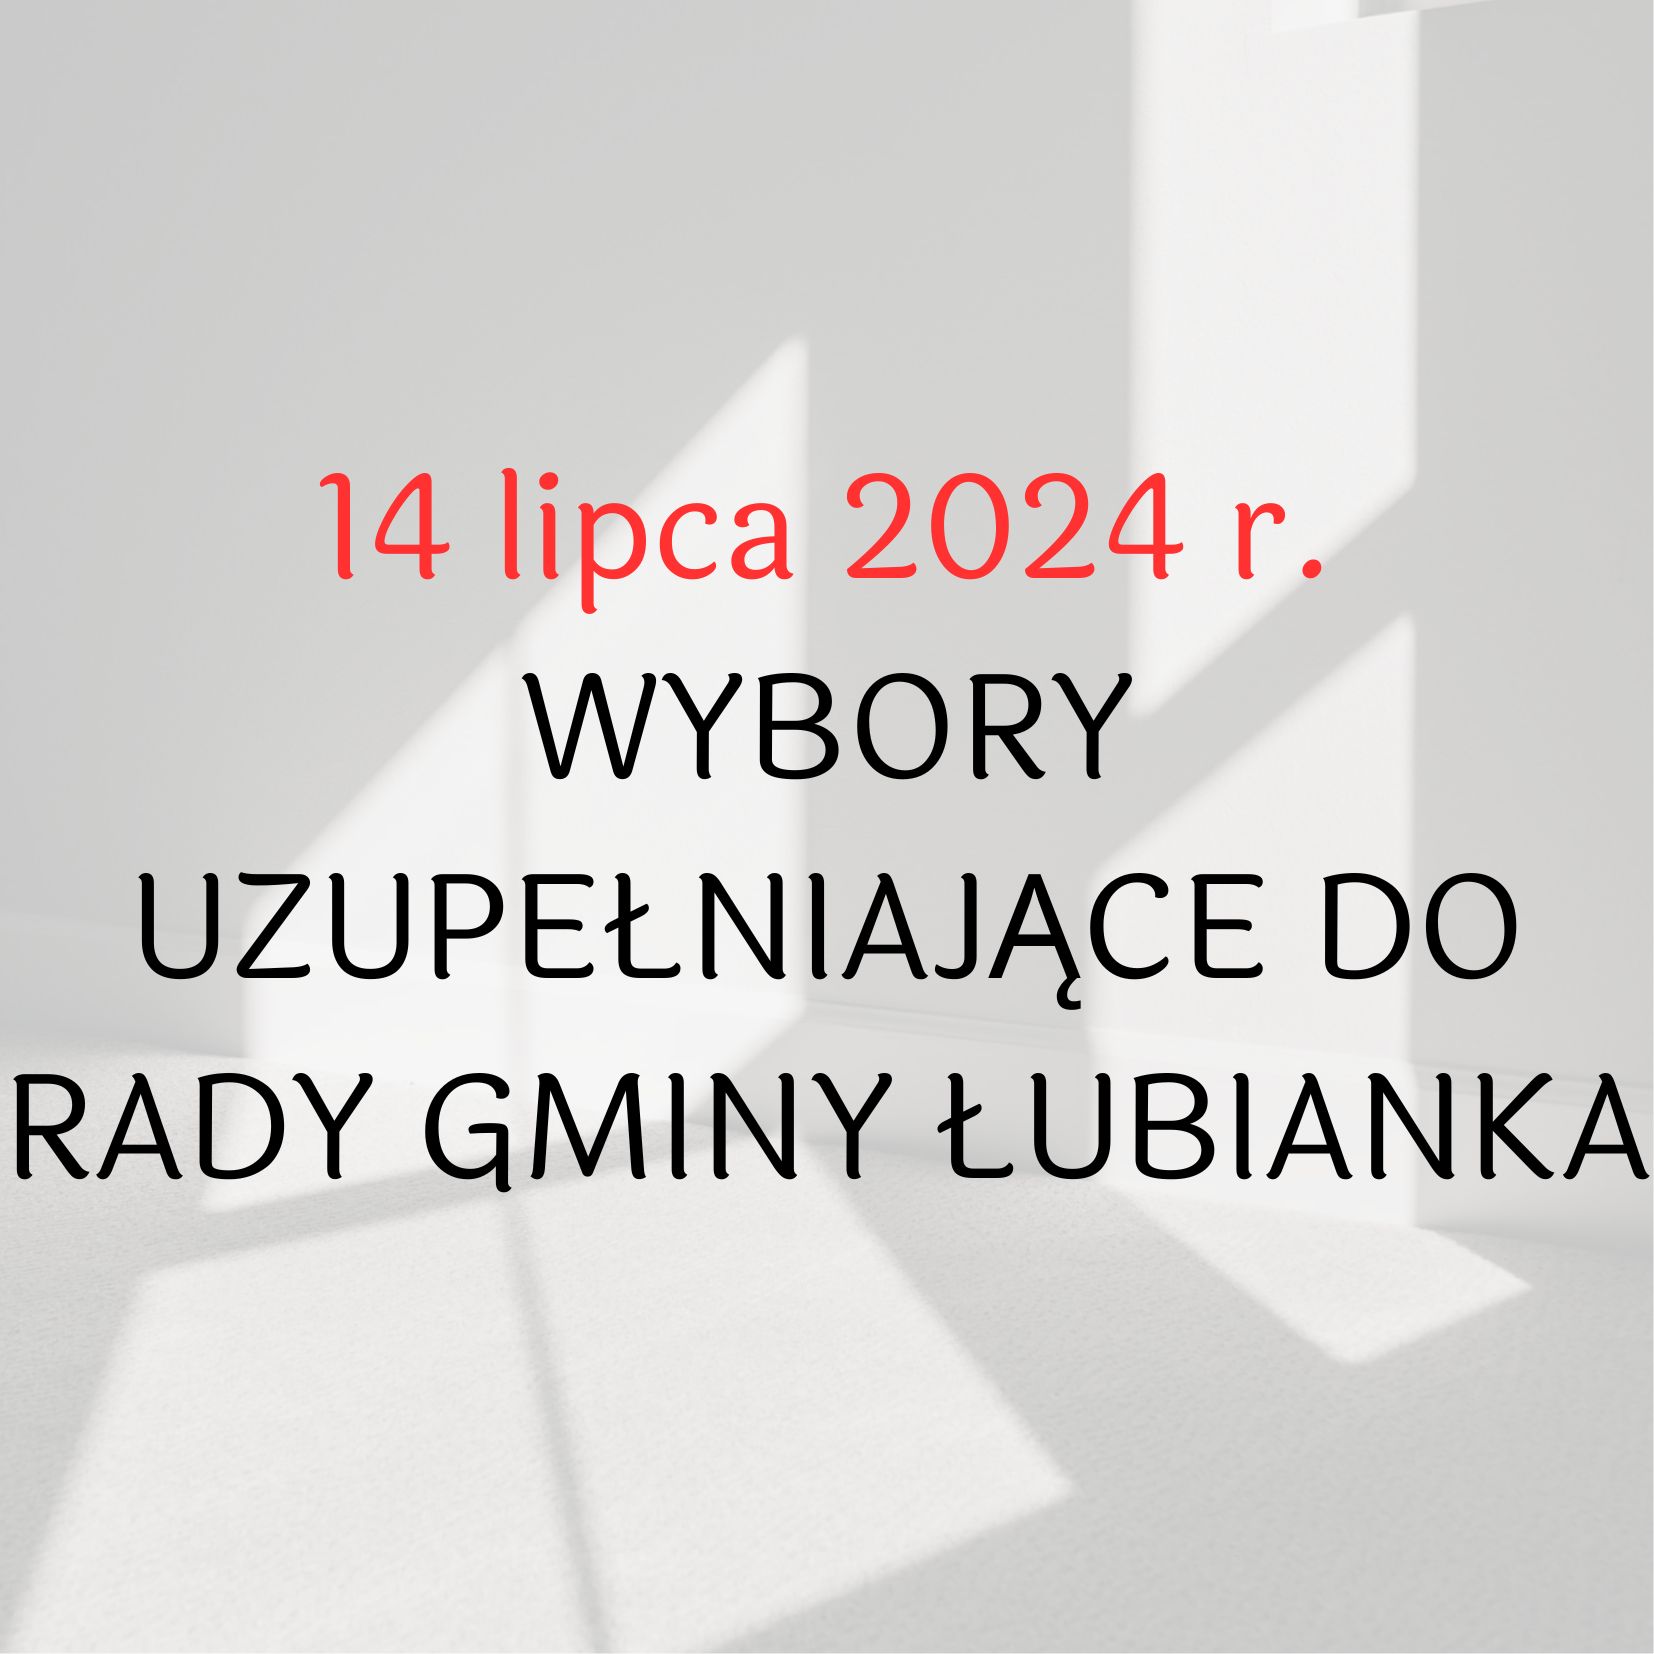 Wybory uzupełniające do Rady Gminy Łubianka - 14.07.2024 r.